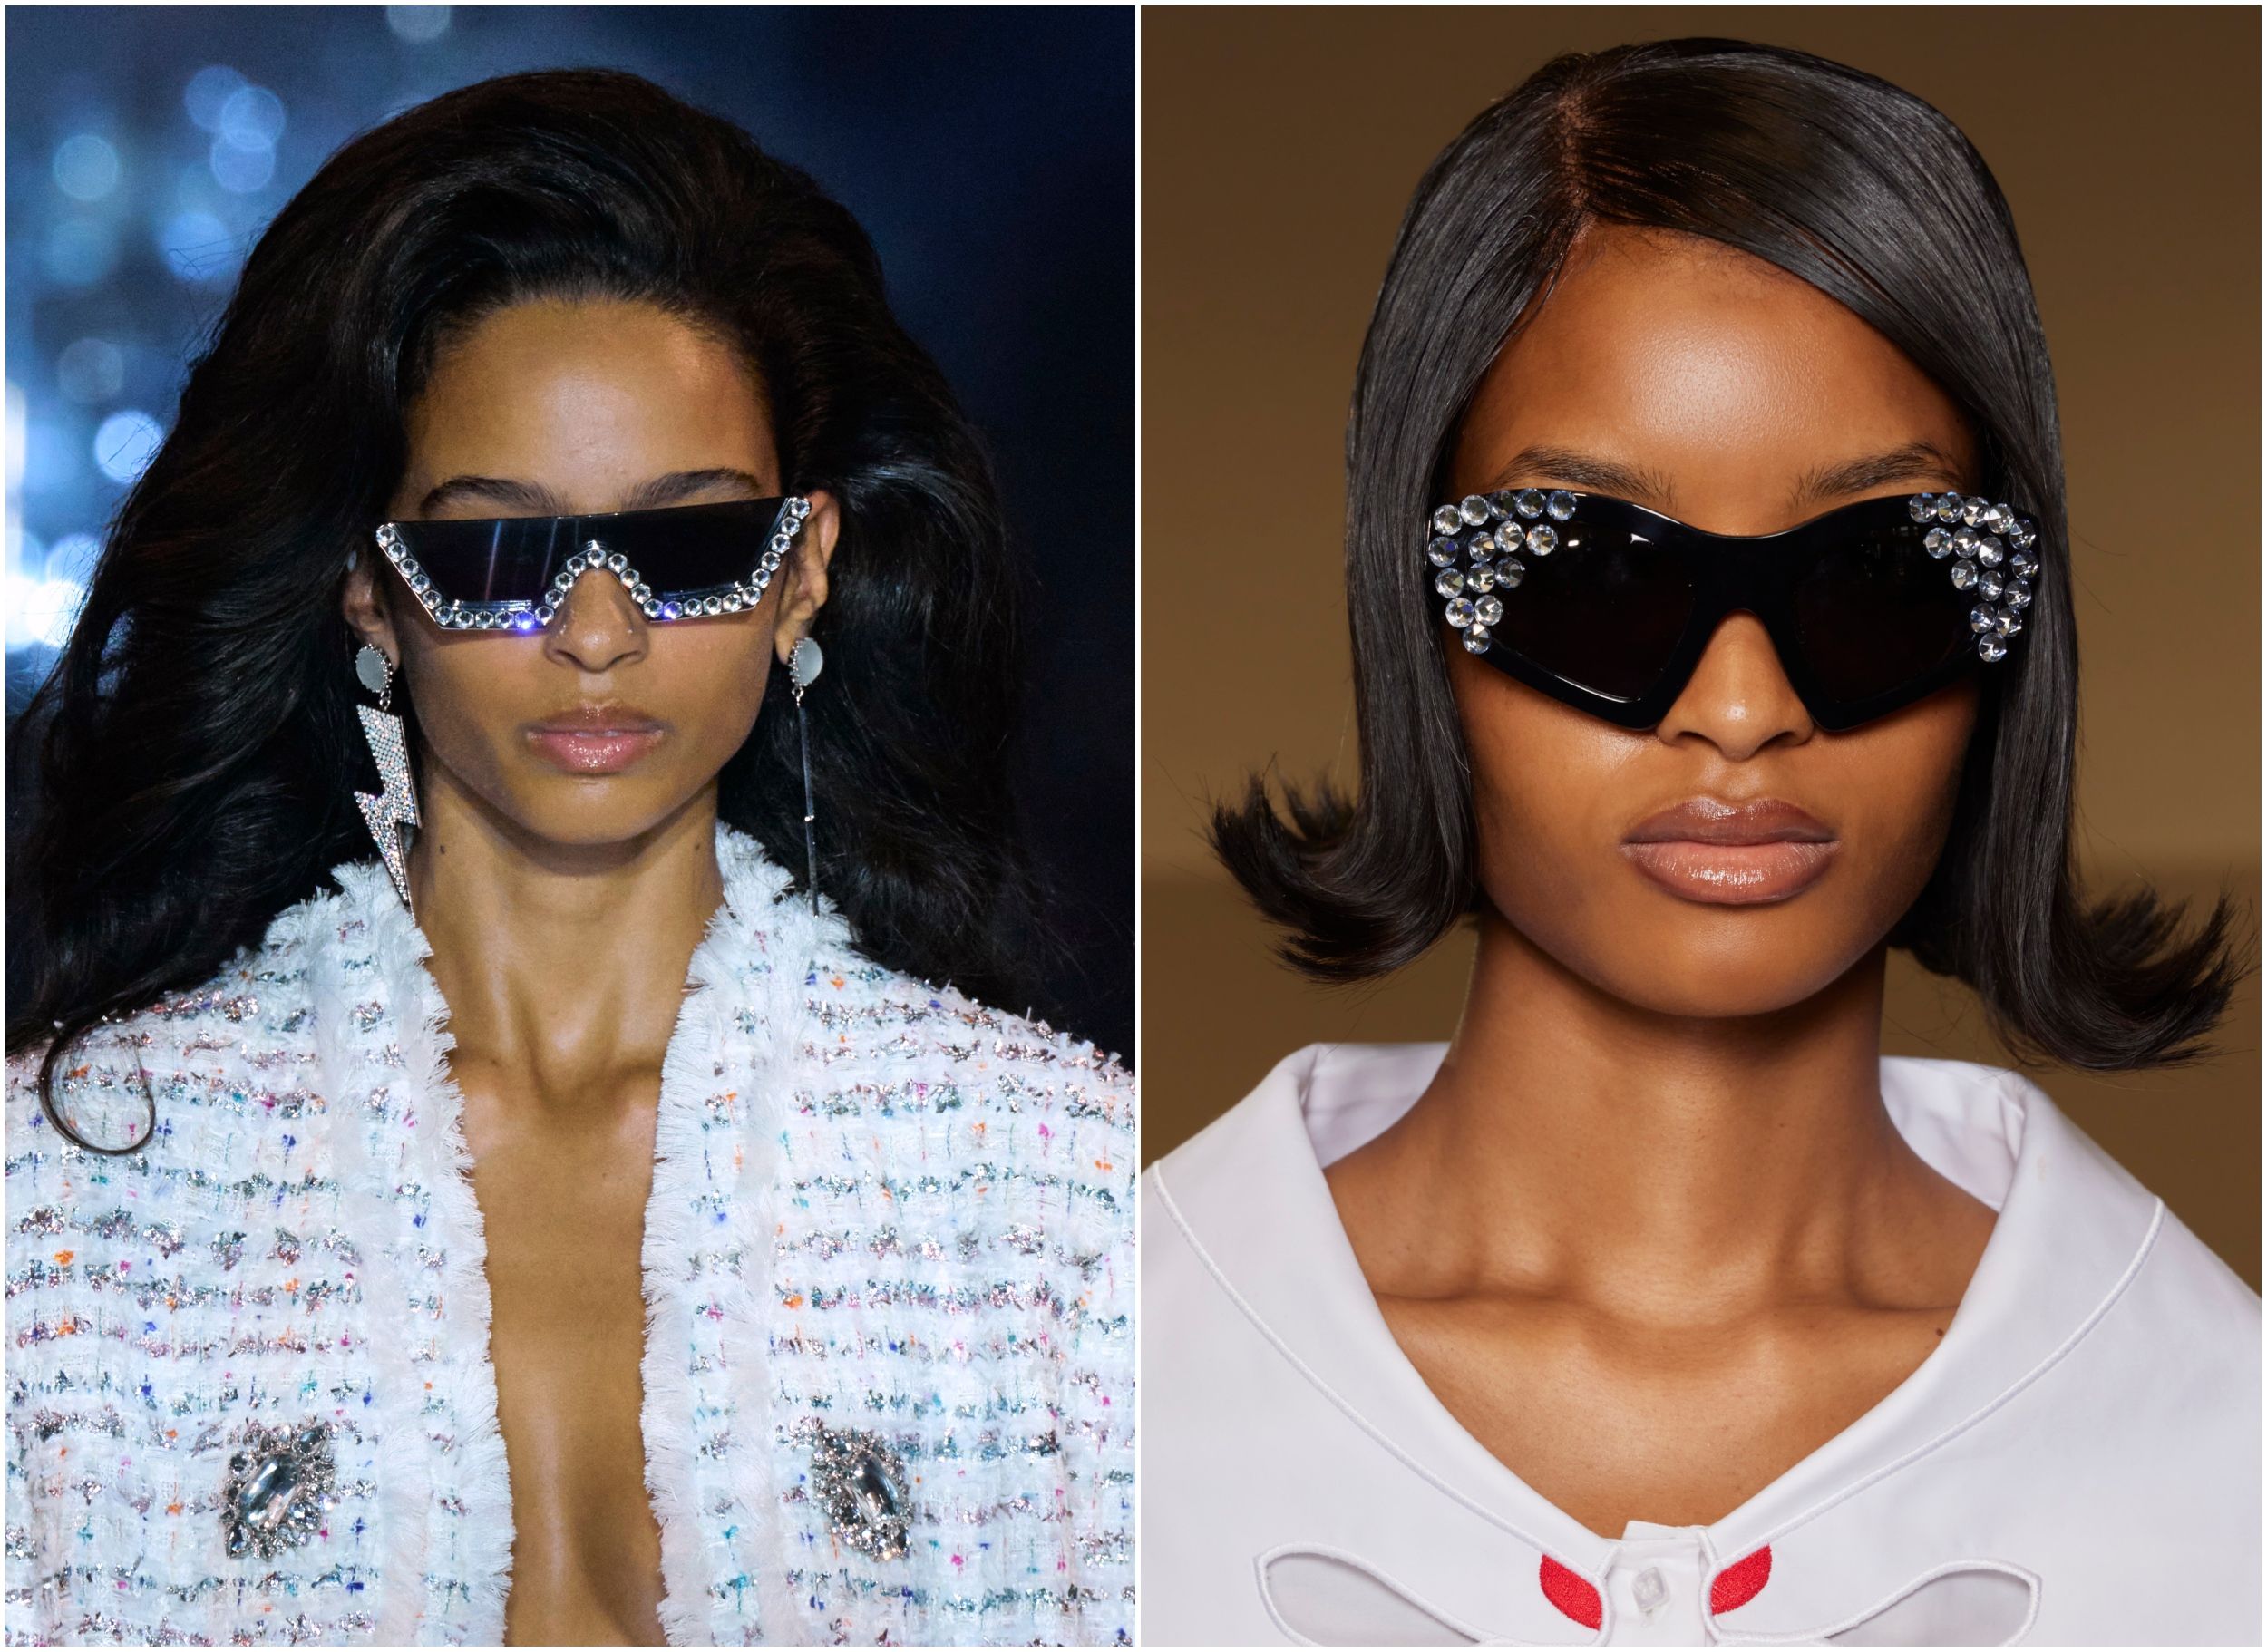 Gafas de sol 2018- tendencias y modelos principales de moda femenina #Moda # mujer #bonito #e…